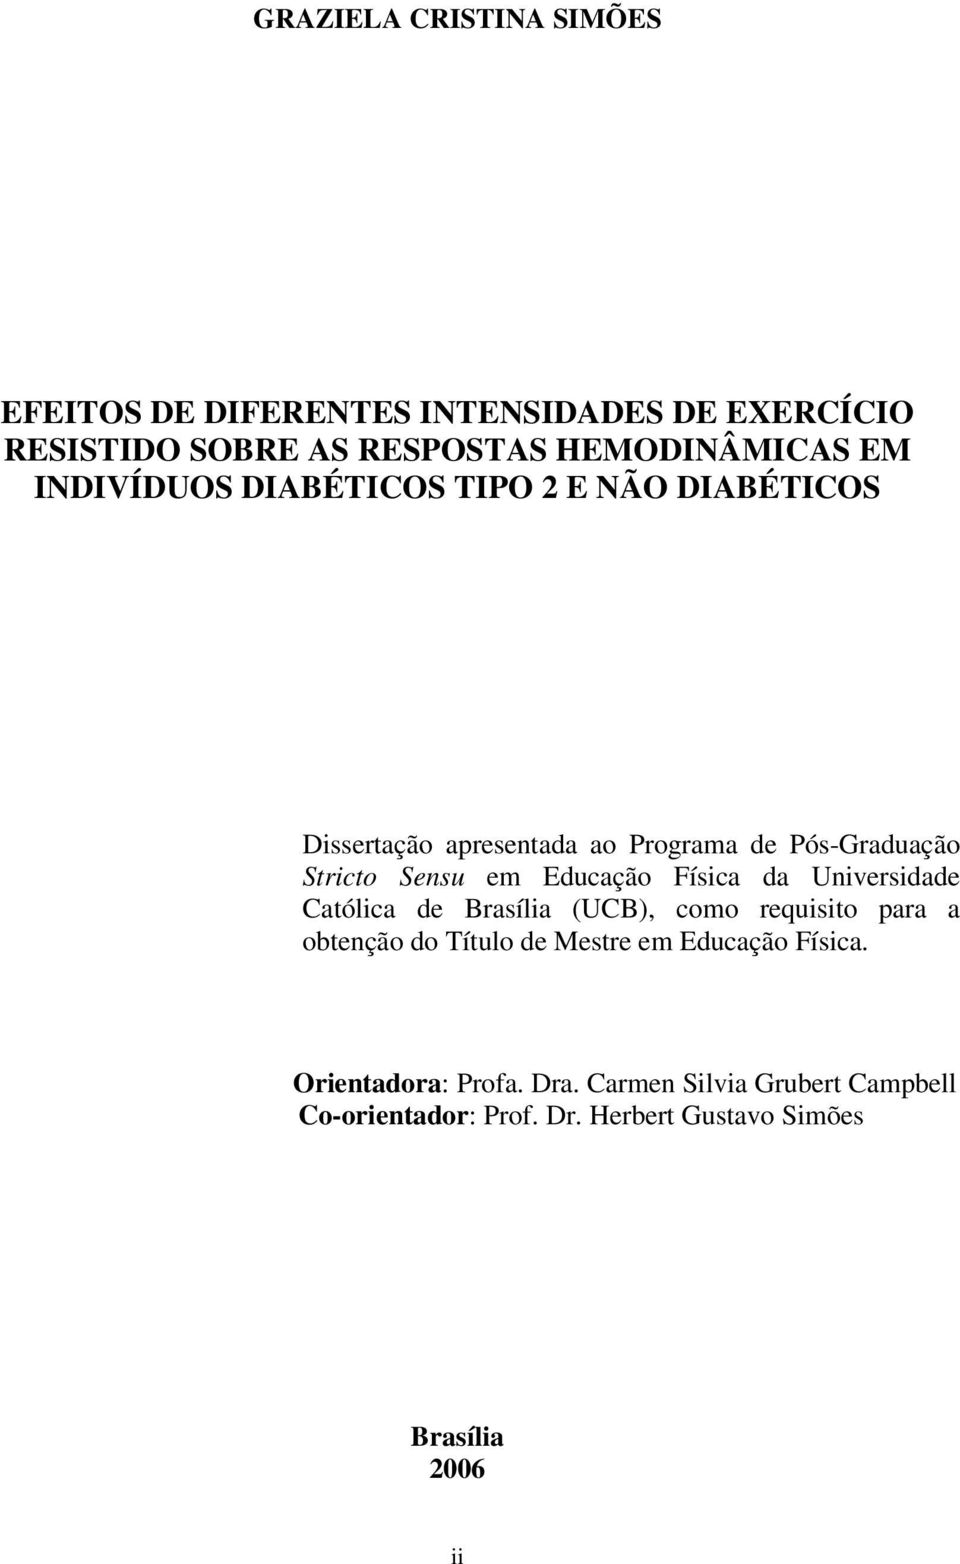 Educação Física da Universidade Católica de Brasília (UCB), como requisito para a obtenção do Título de Mestre em